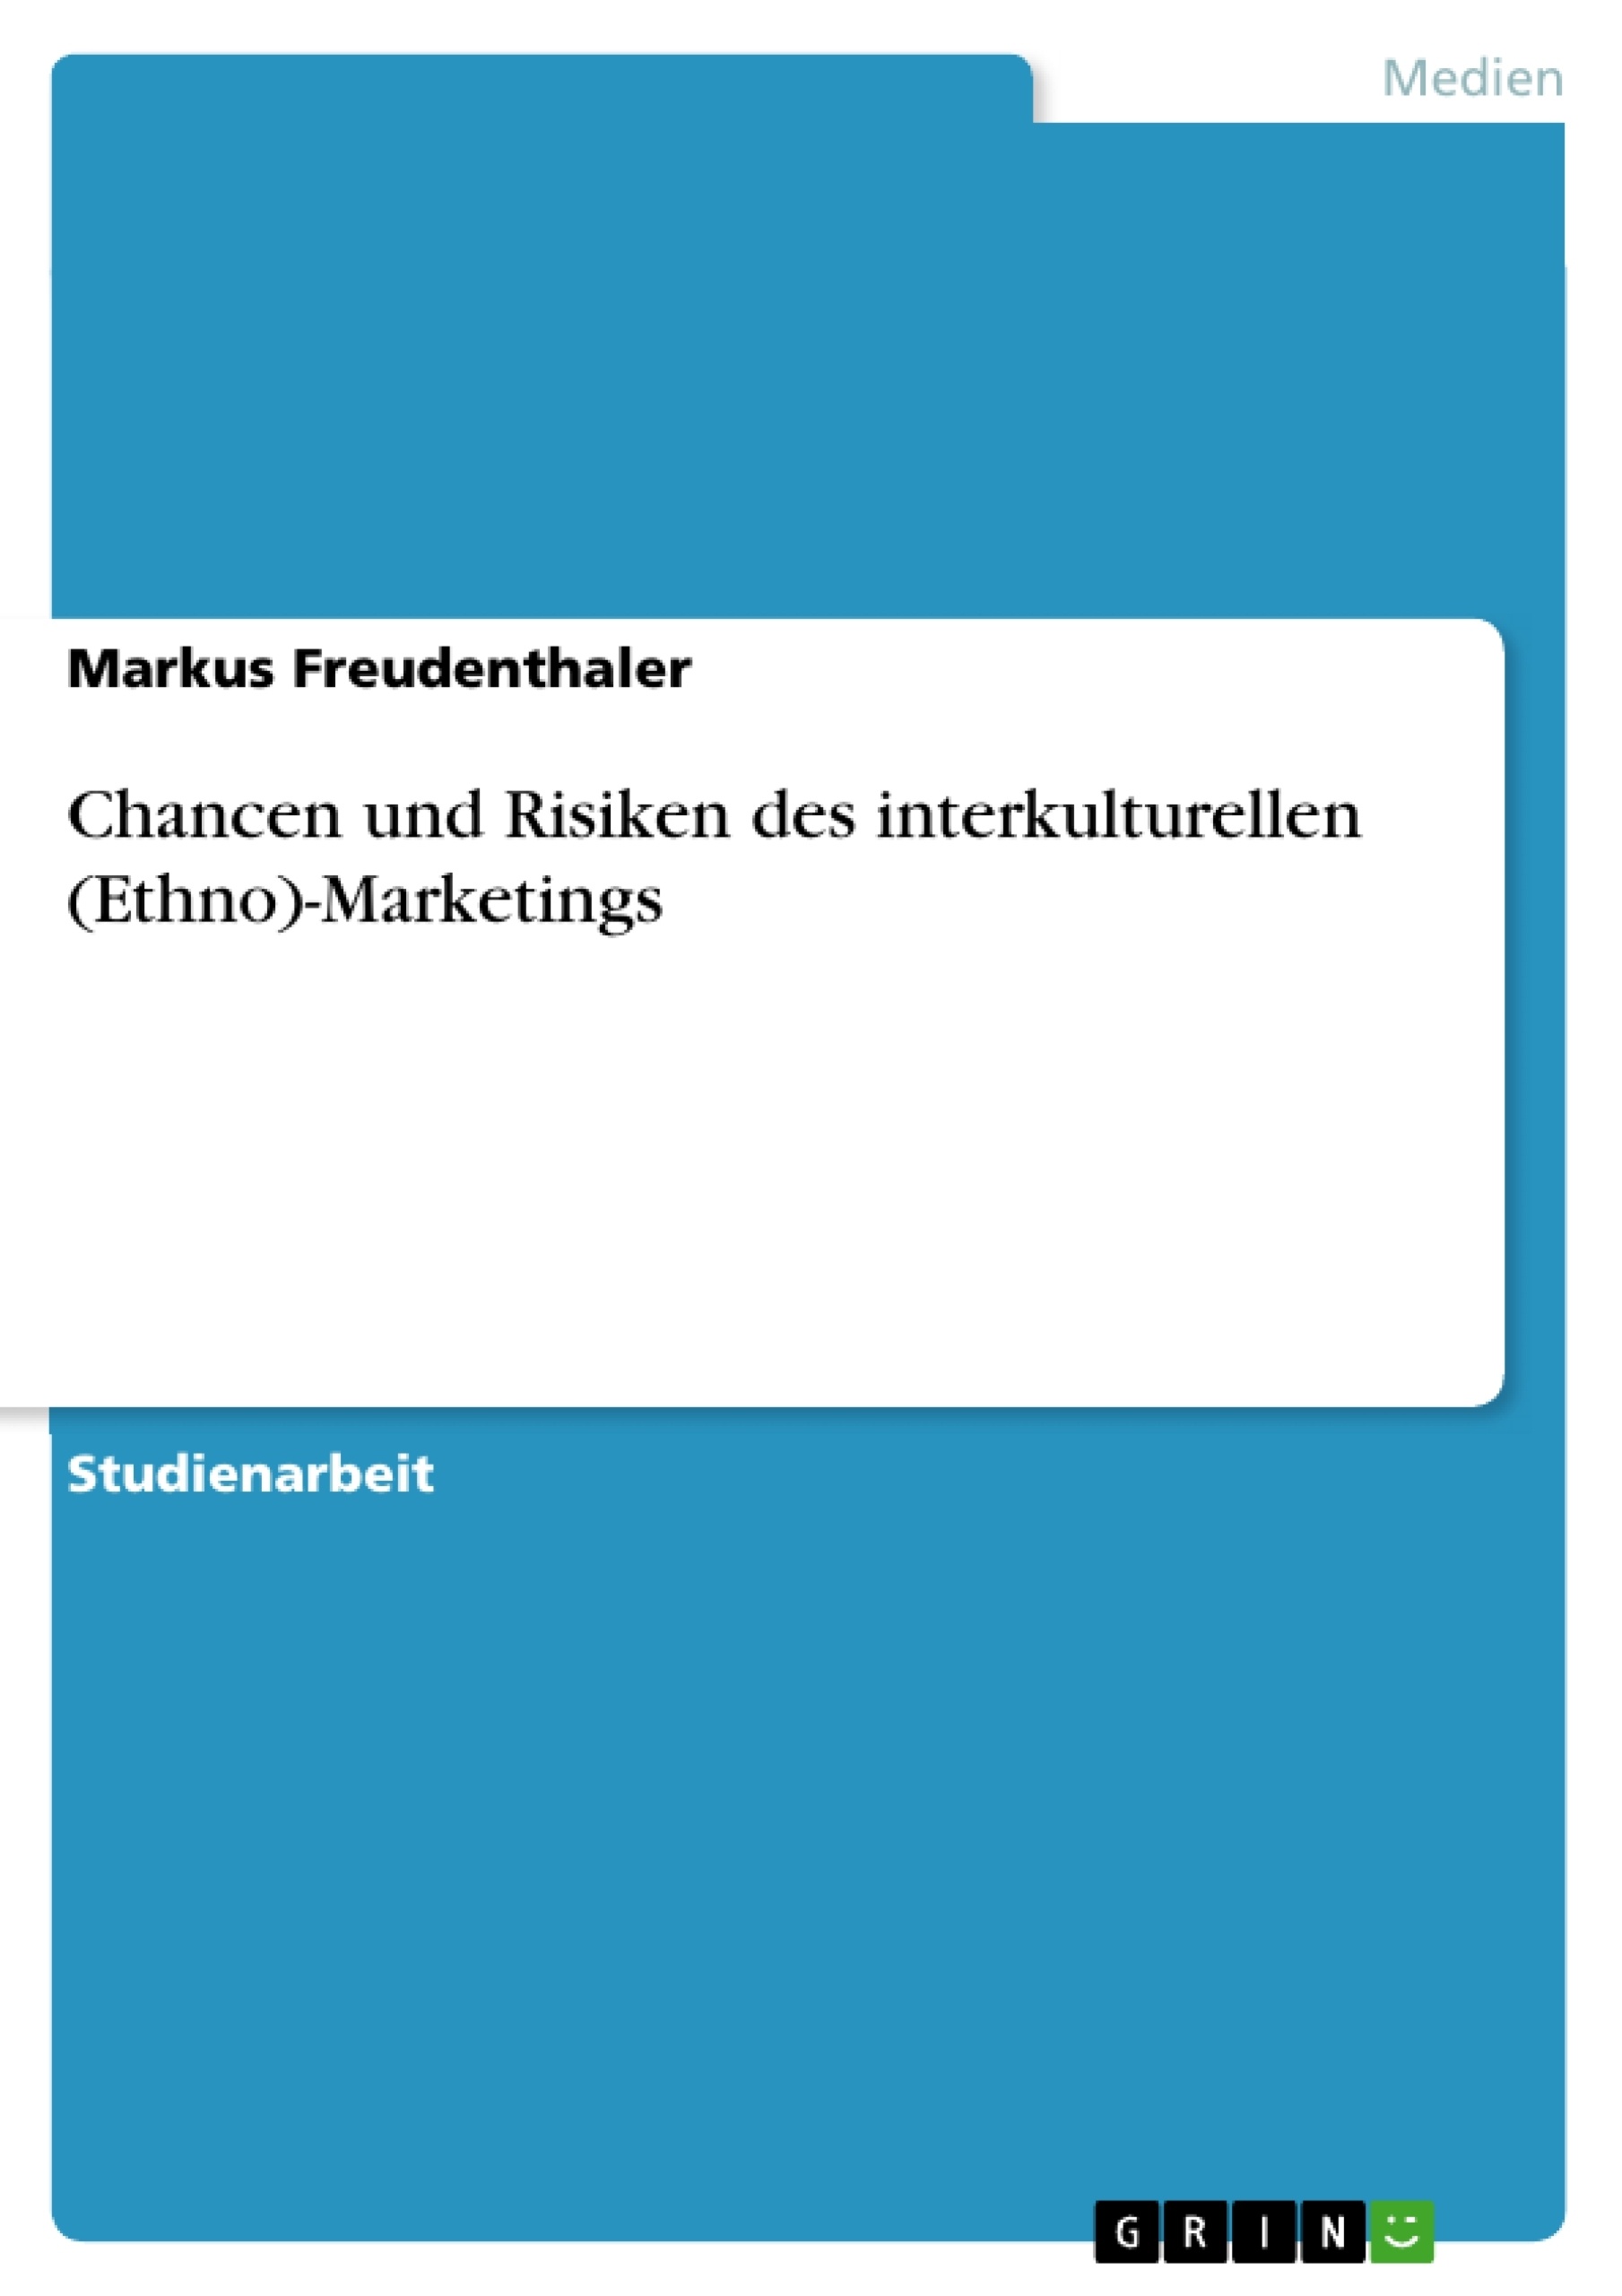 Title: Chancen und Risiken des interkulturellen (Ethno)-Marketings